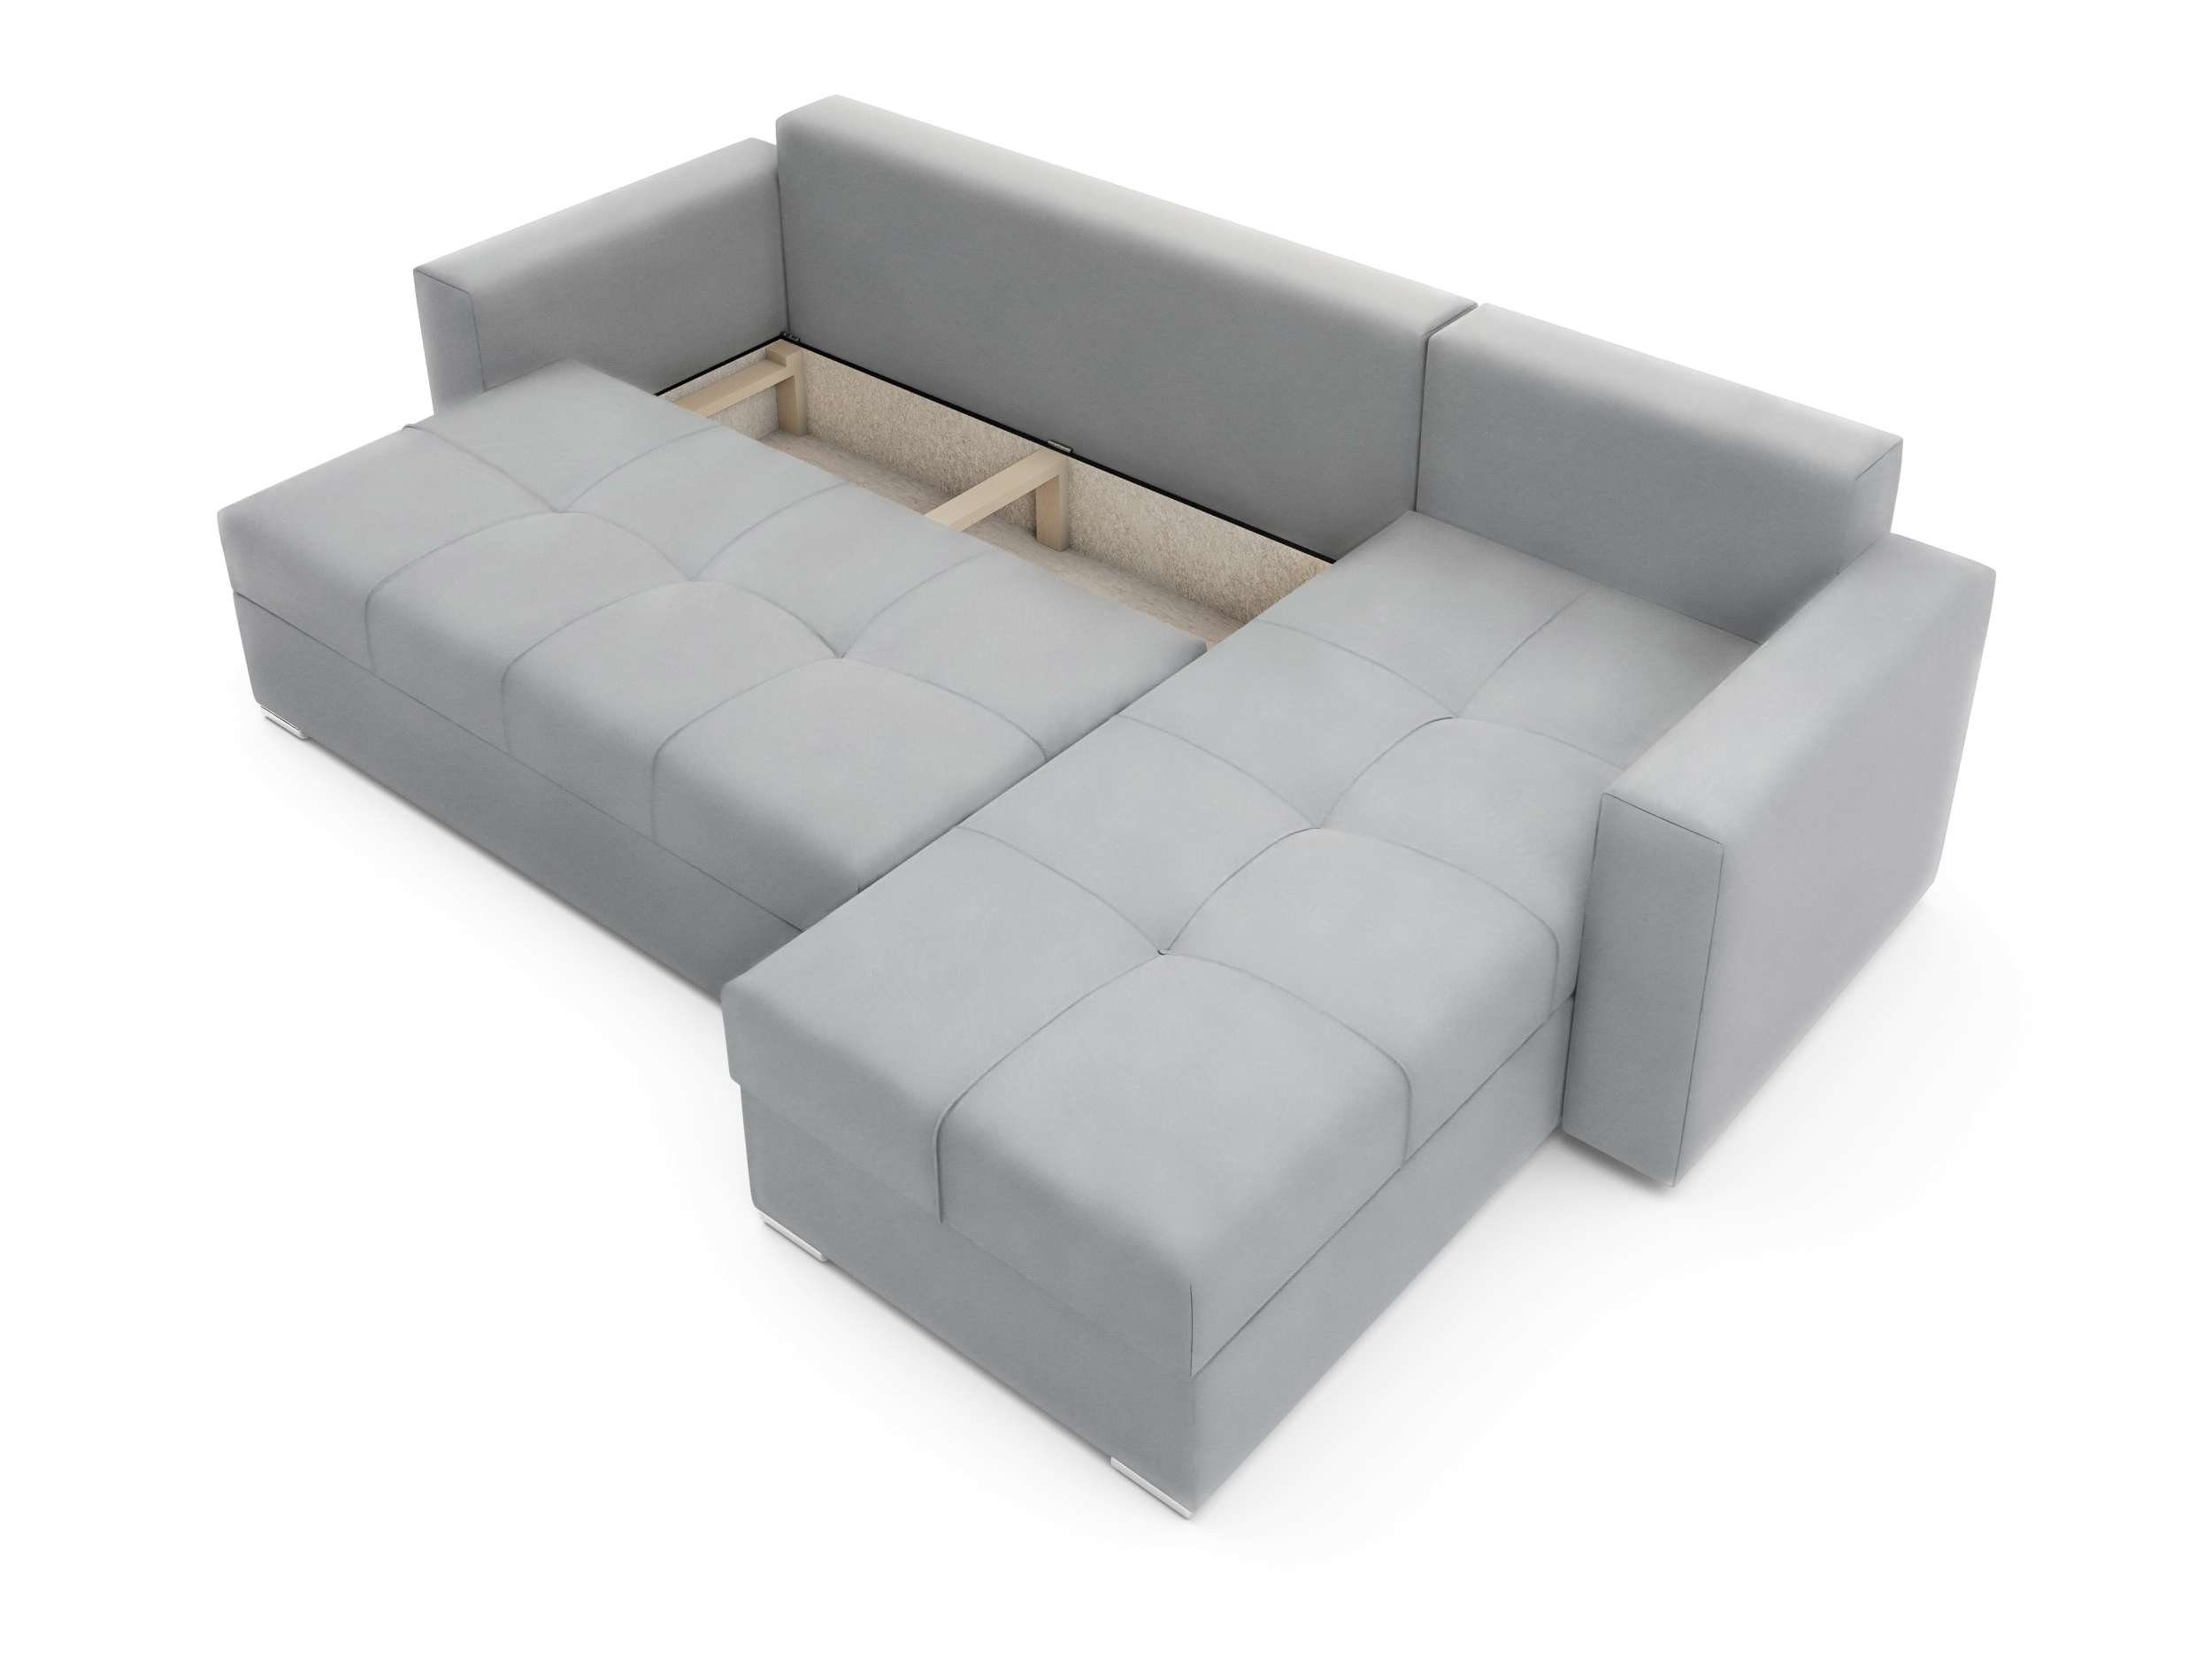 Bettkasten, Sofa, Stylefy Sitzkomfort, Adelina, Ecksofa L-Form, Eckcouch, Bettfunktion, mit Modern Design mit